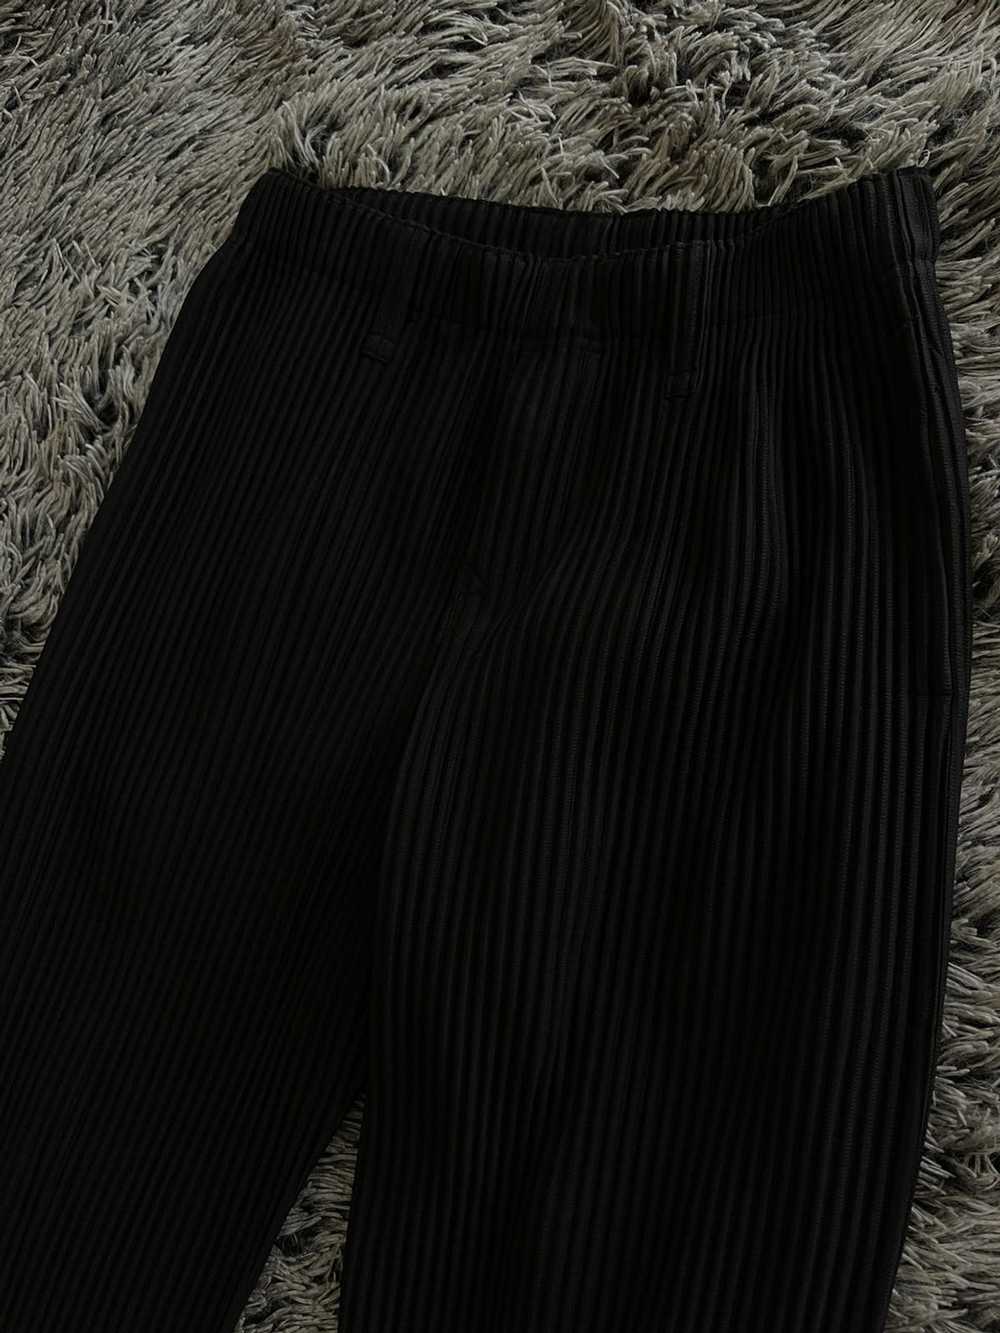 Issey Miyake HOMME PLISSĖ Black Basic Trousers - image 2